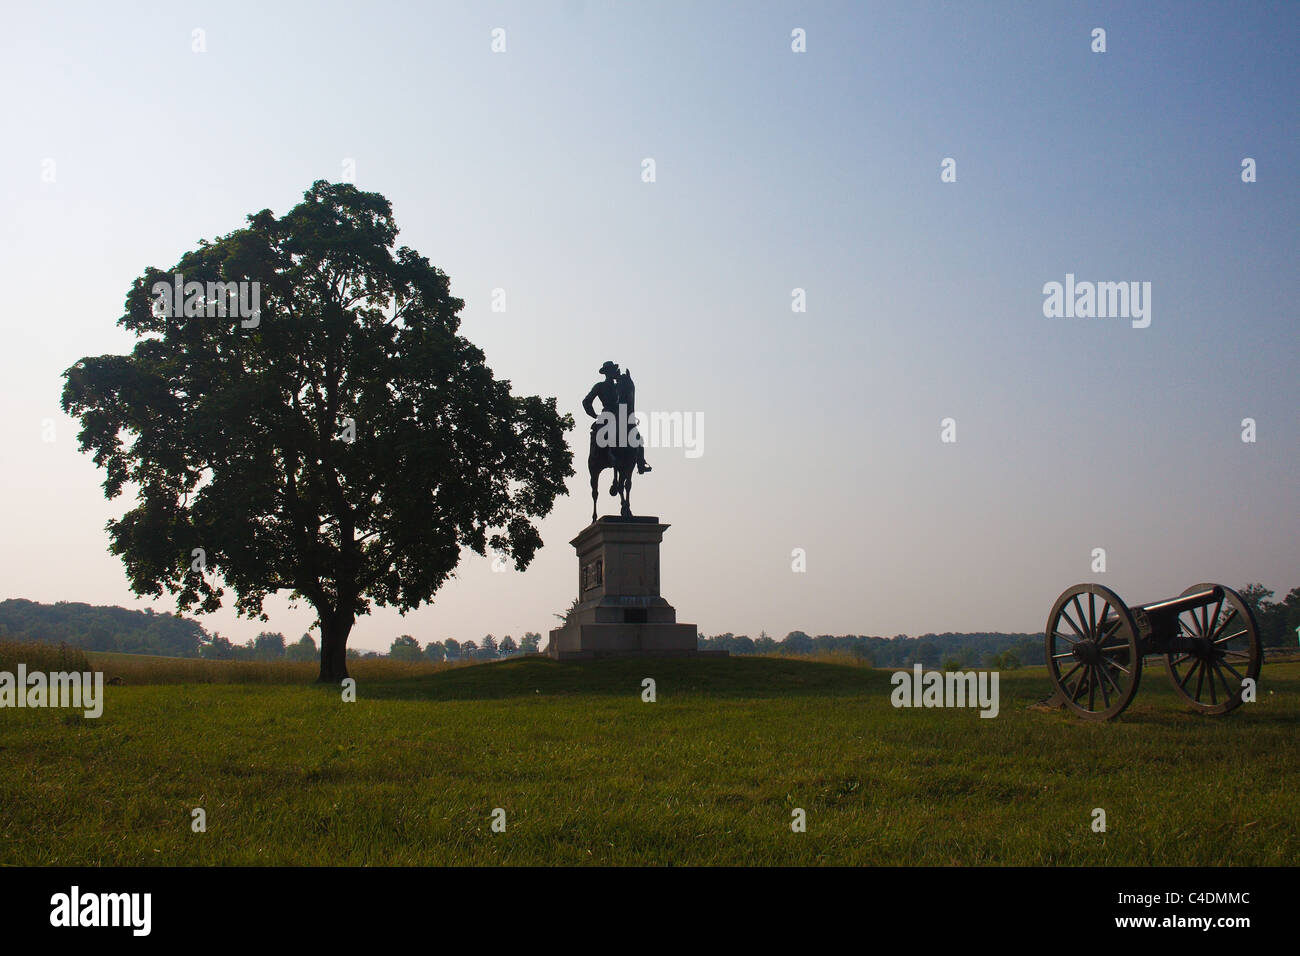 Statua equestre di Unione generale al Seminario Ridge guerra civile nei pressi del campo di battaglia di Gettysburg, Pennsylvania, STATI UNITI D'AMERICA Foto Stock